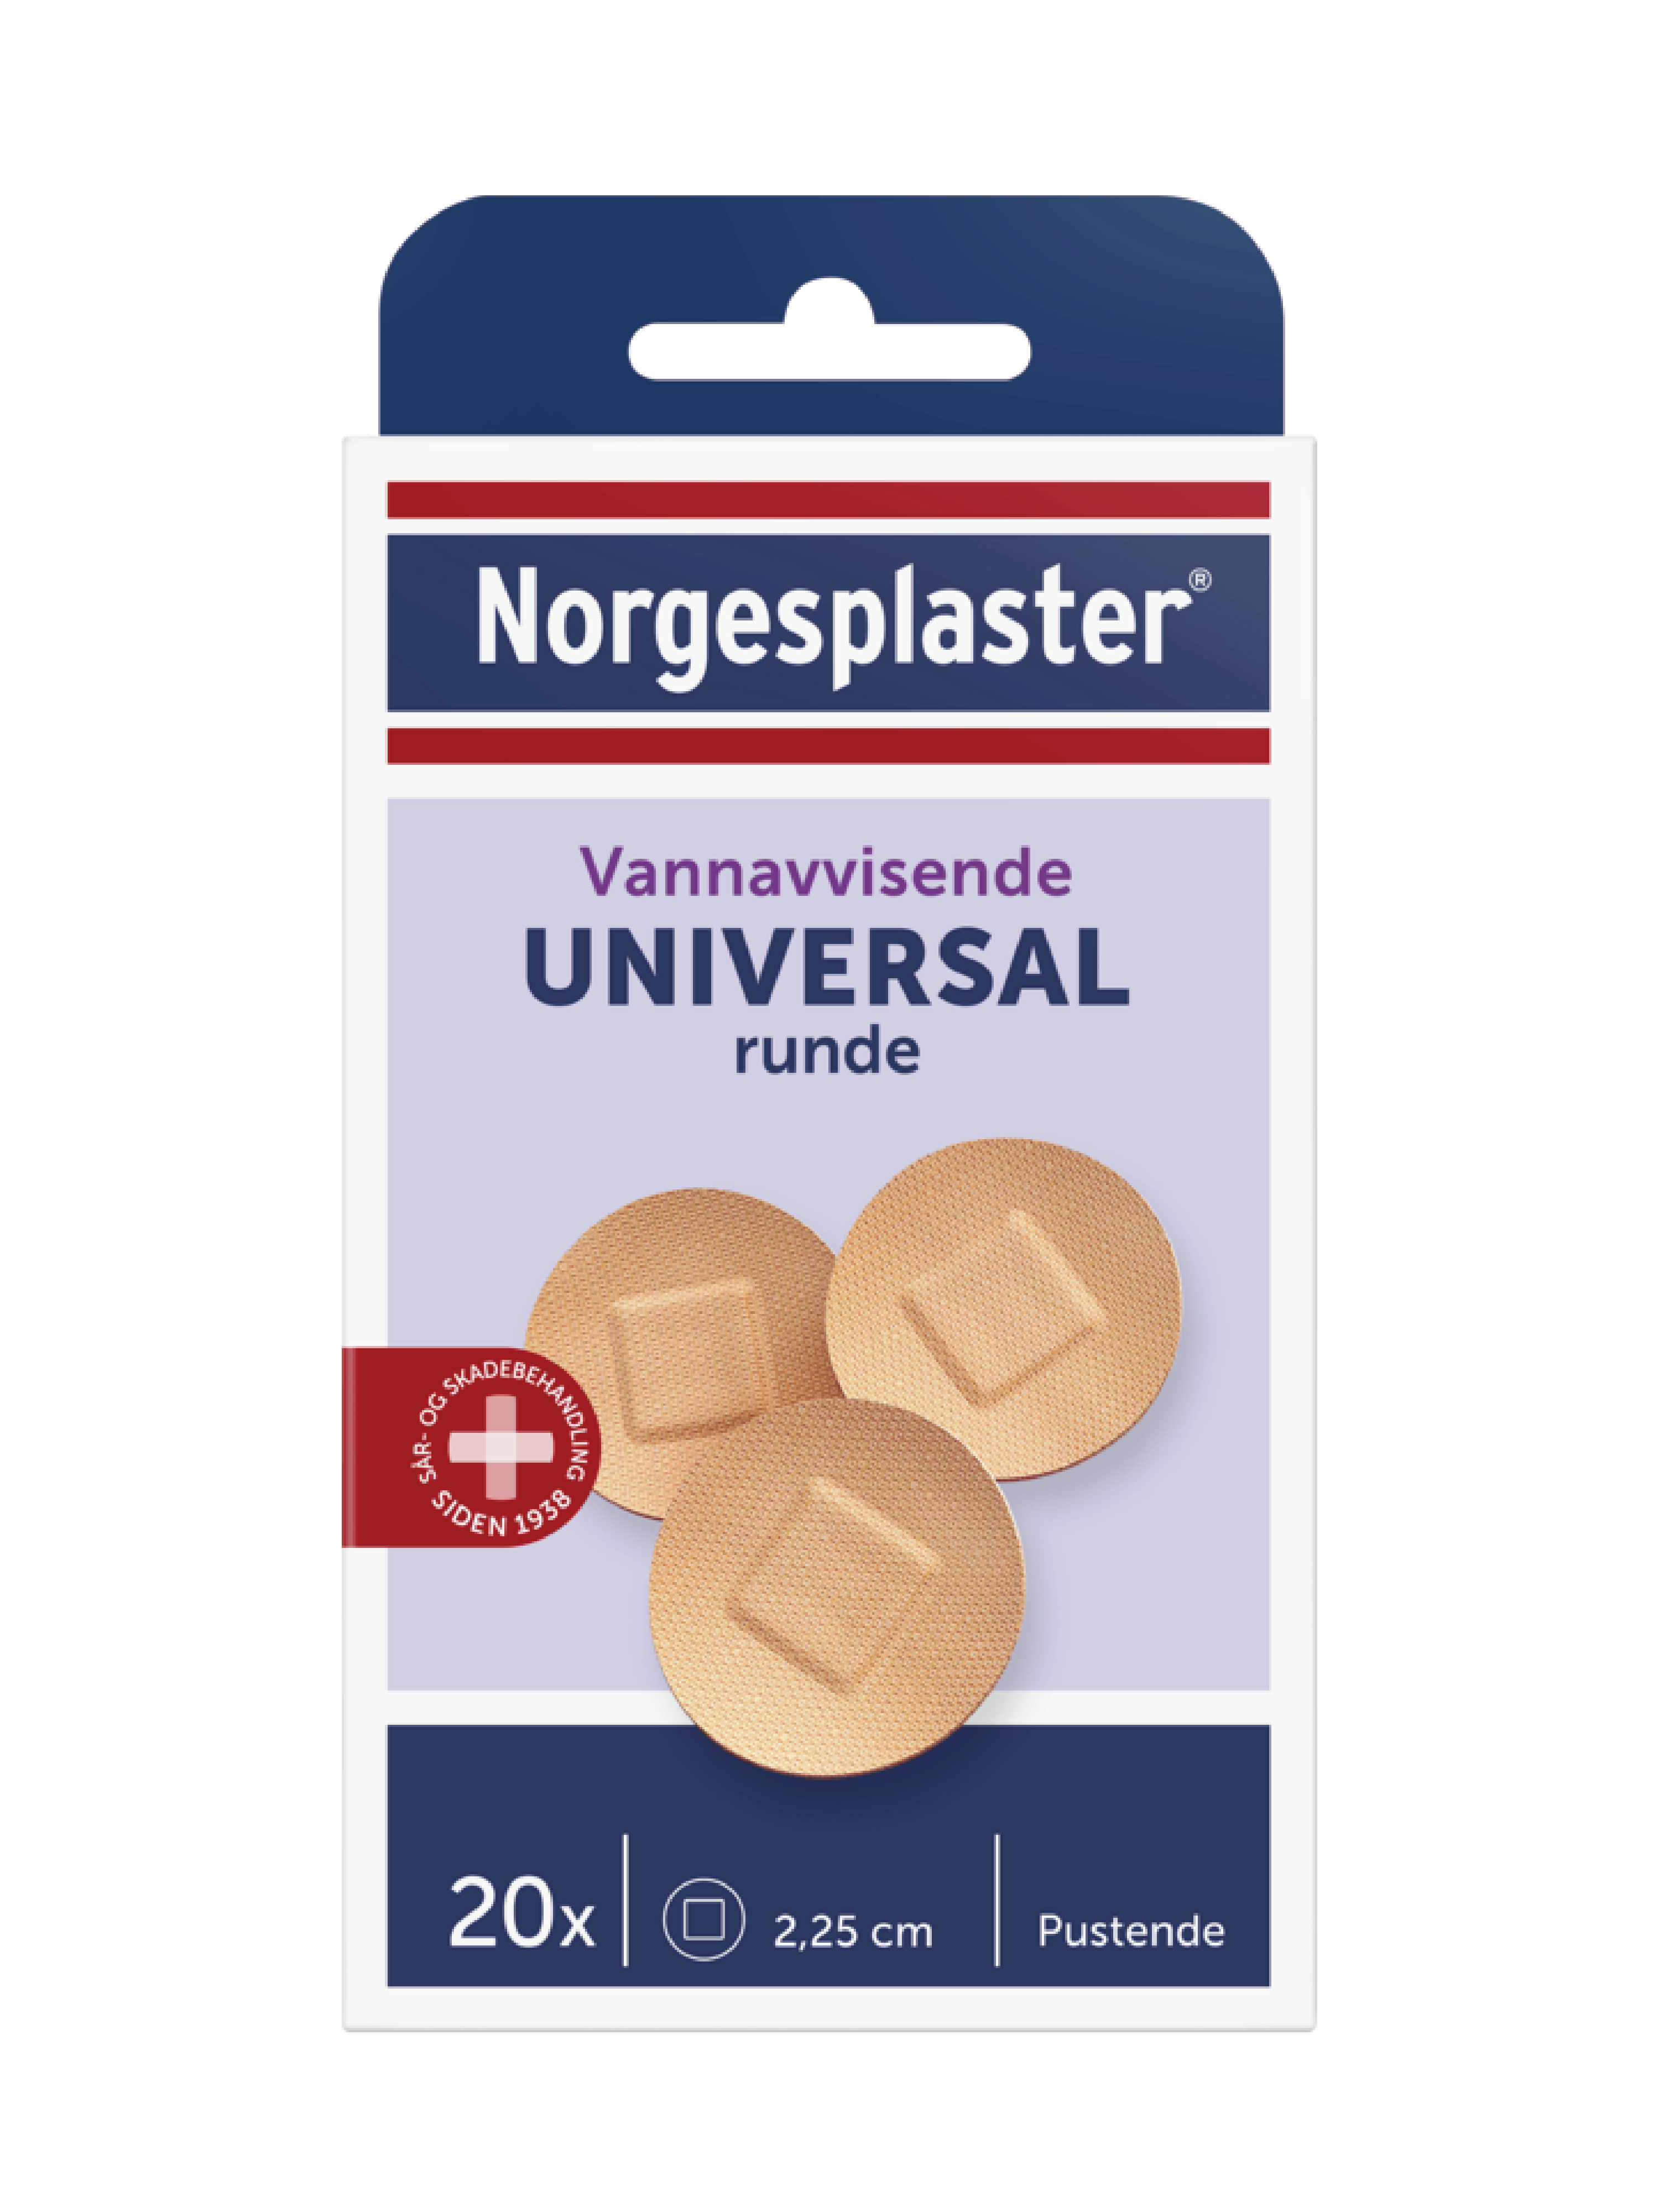 Norgesplaster Universal runde, 1 stk